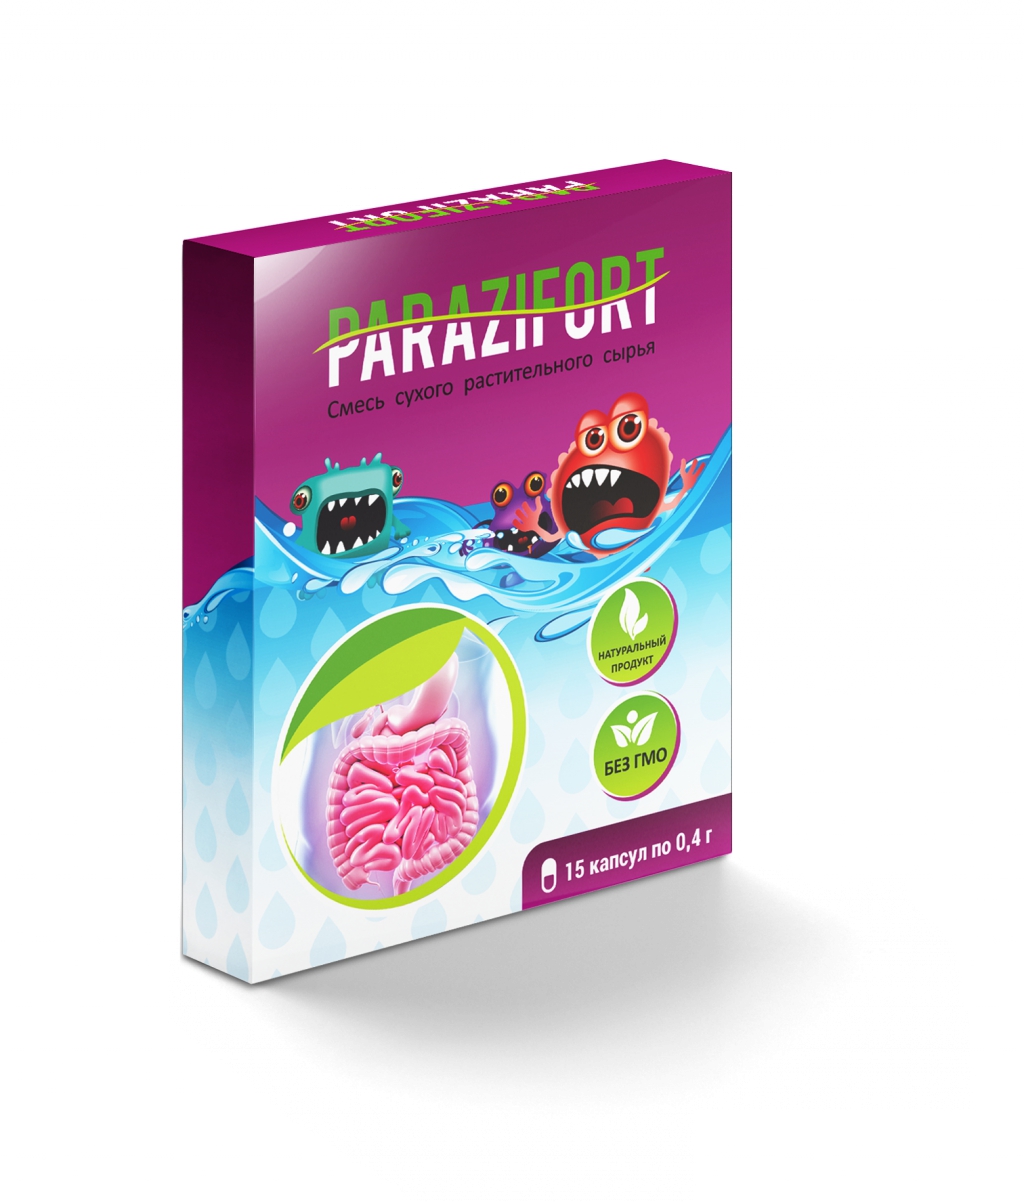 Капсулы Parazifort от паразитов отзывы